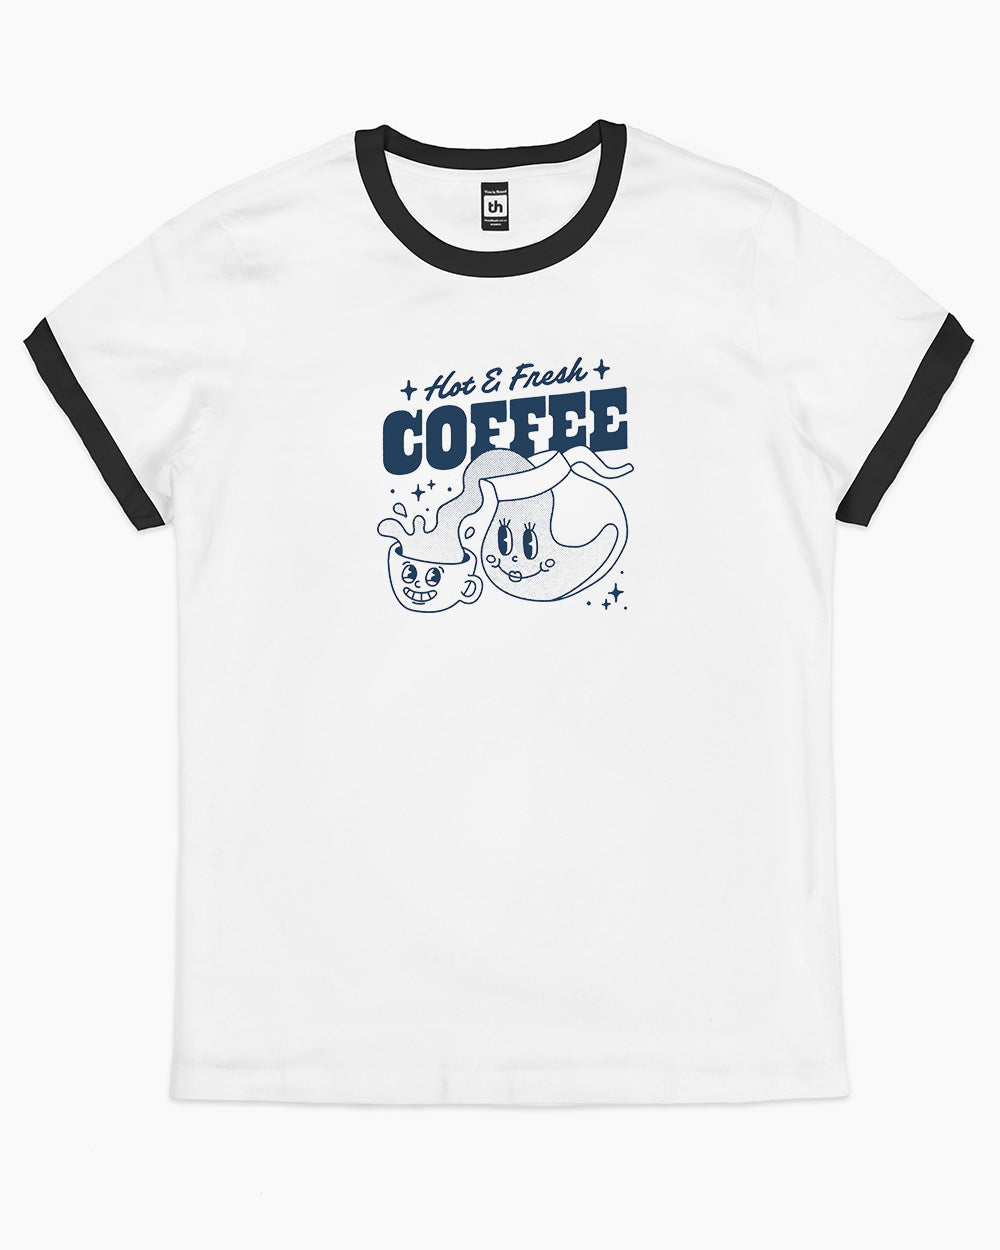 Hot & Fresh Coffee T-Shirt Australia Online #colour_black ringer